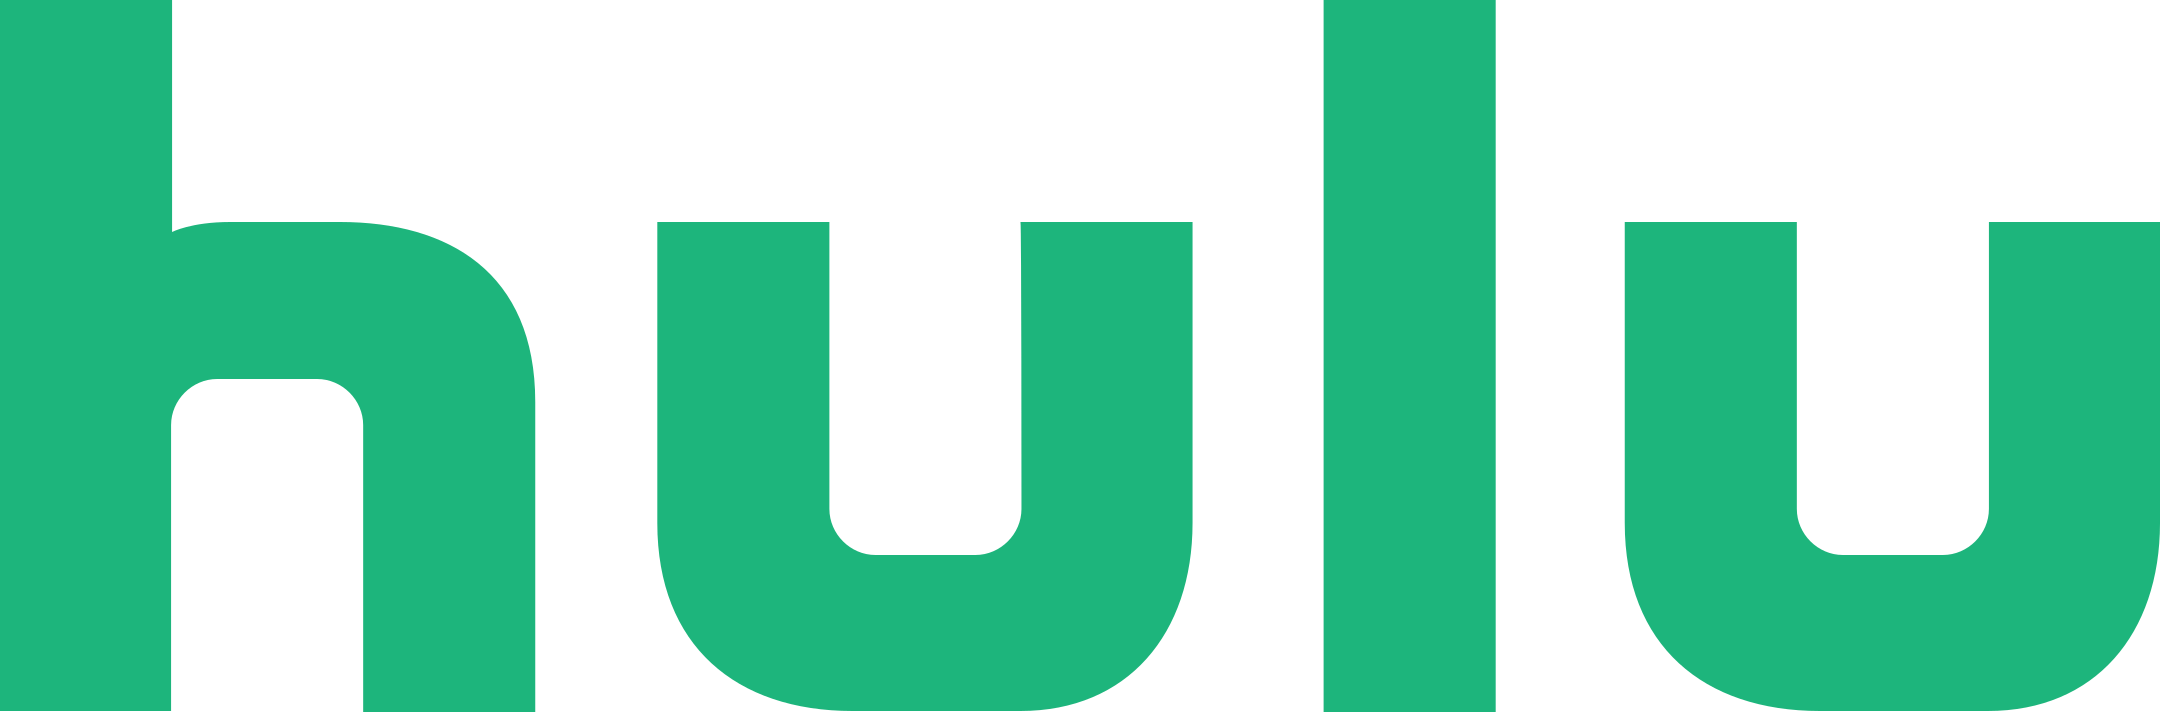 hulu logo 1 - Hulu Logo